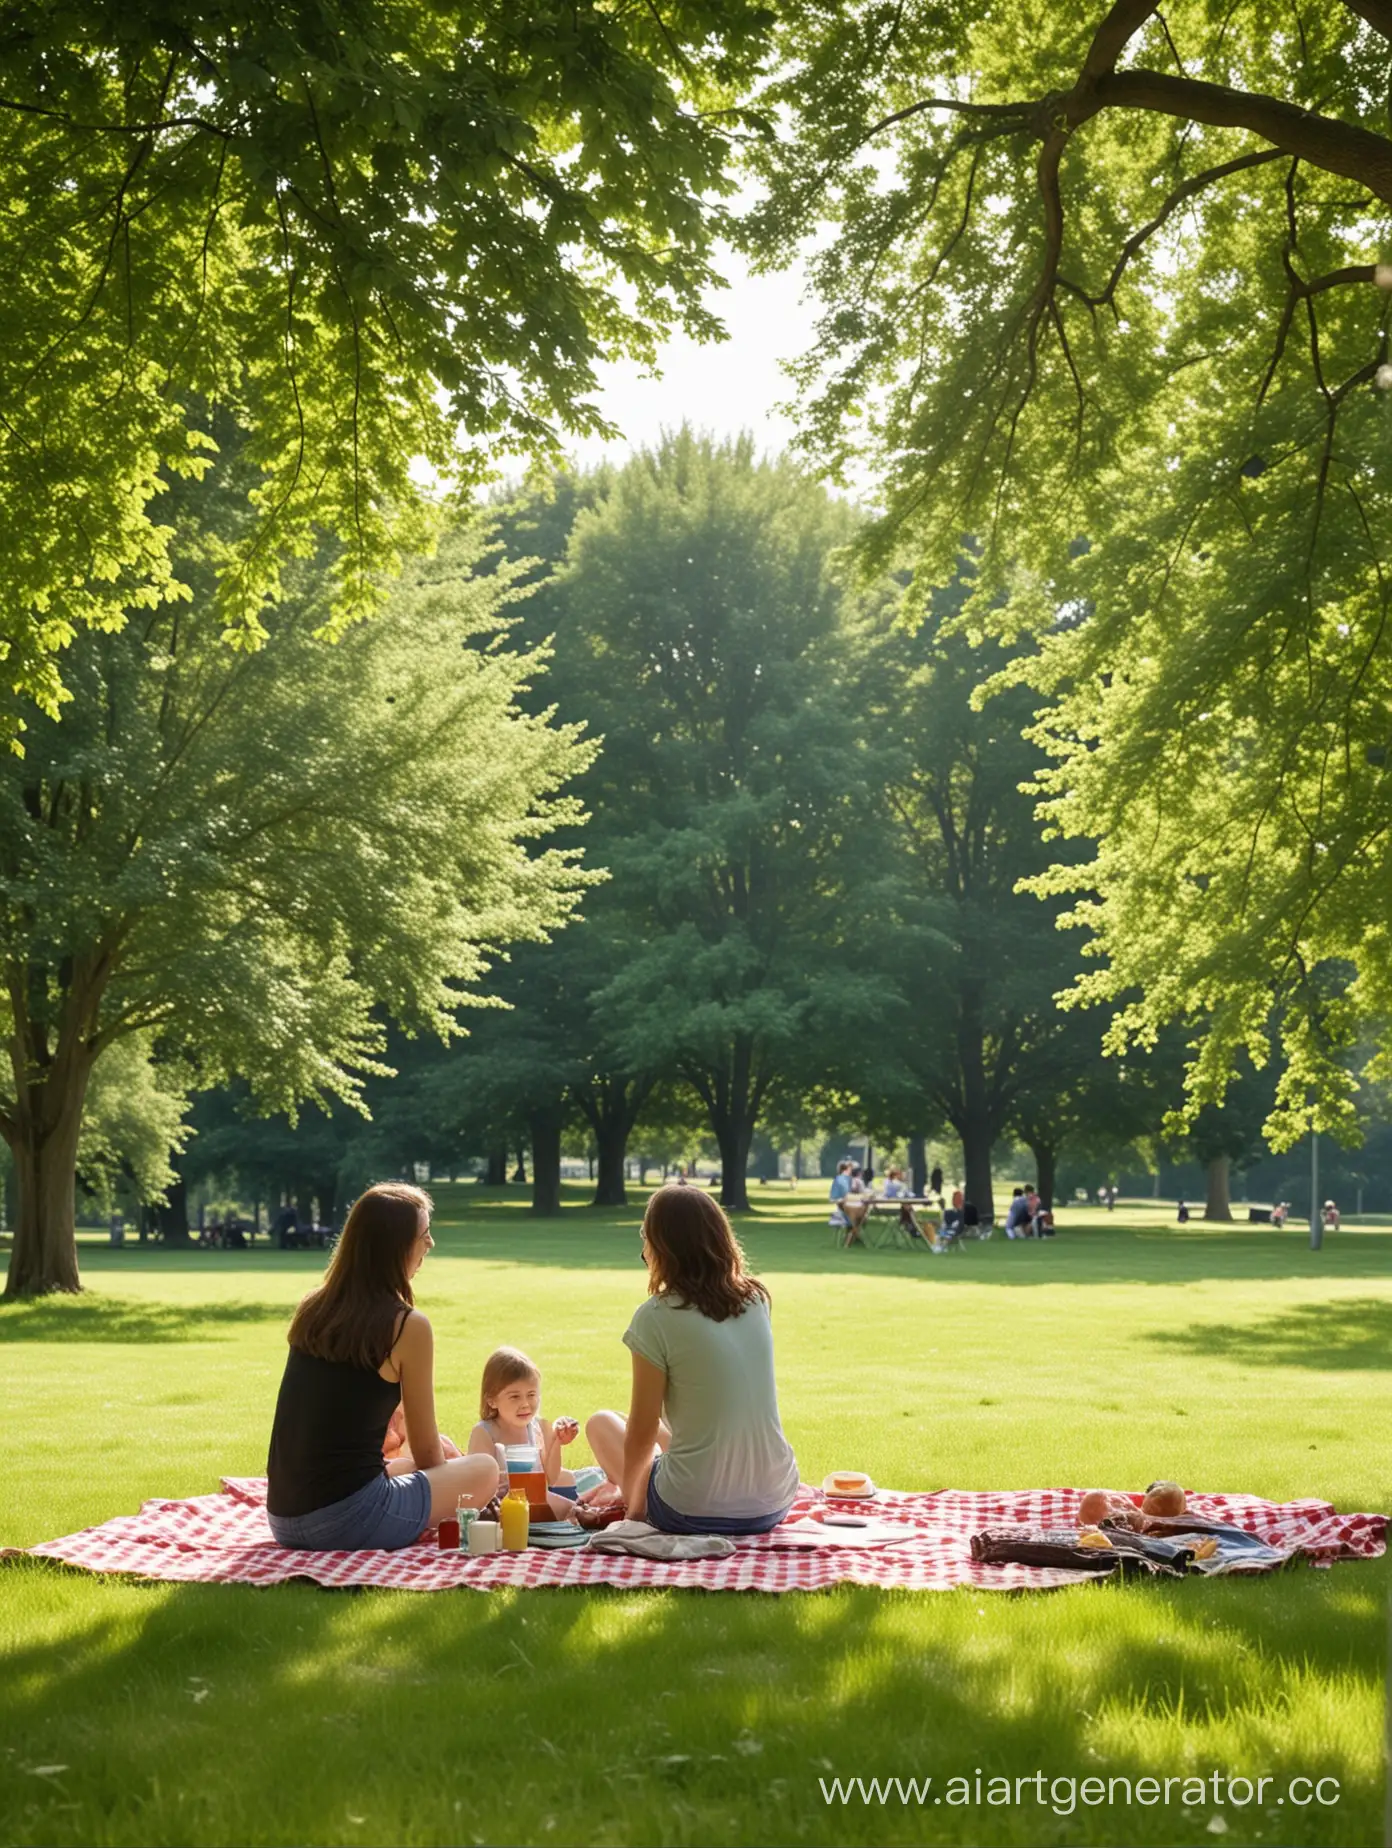 Joyful-Family-Picnic-in-Lush-Summer-Park